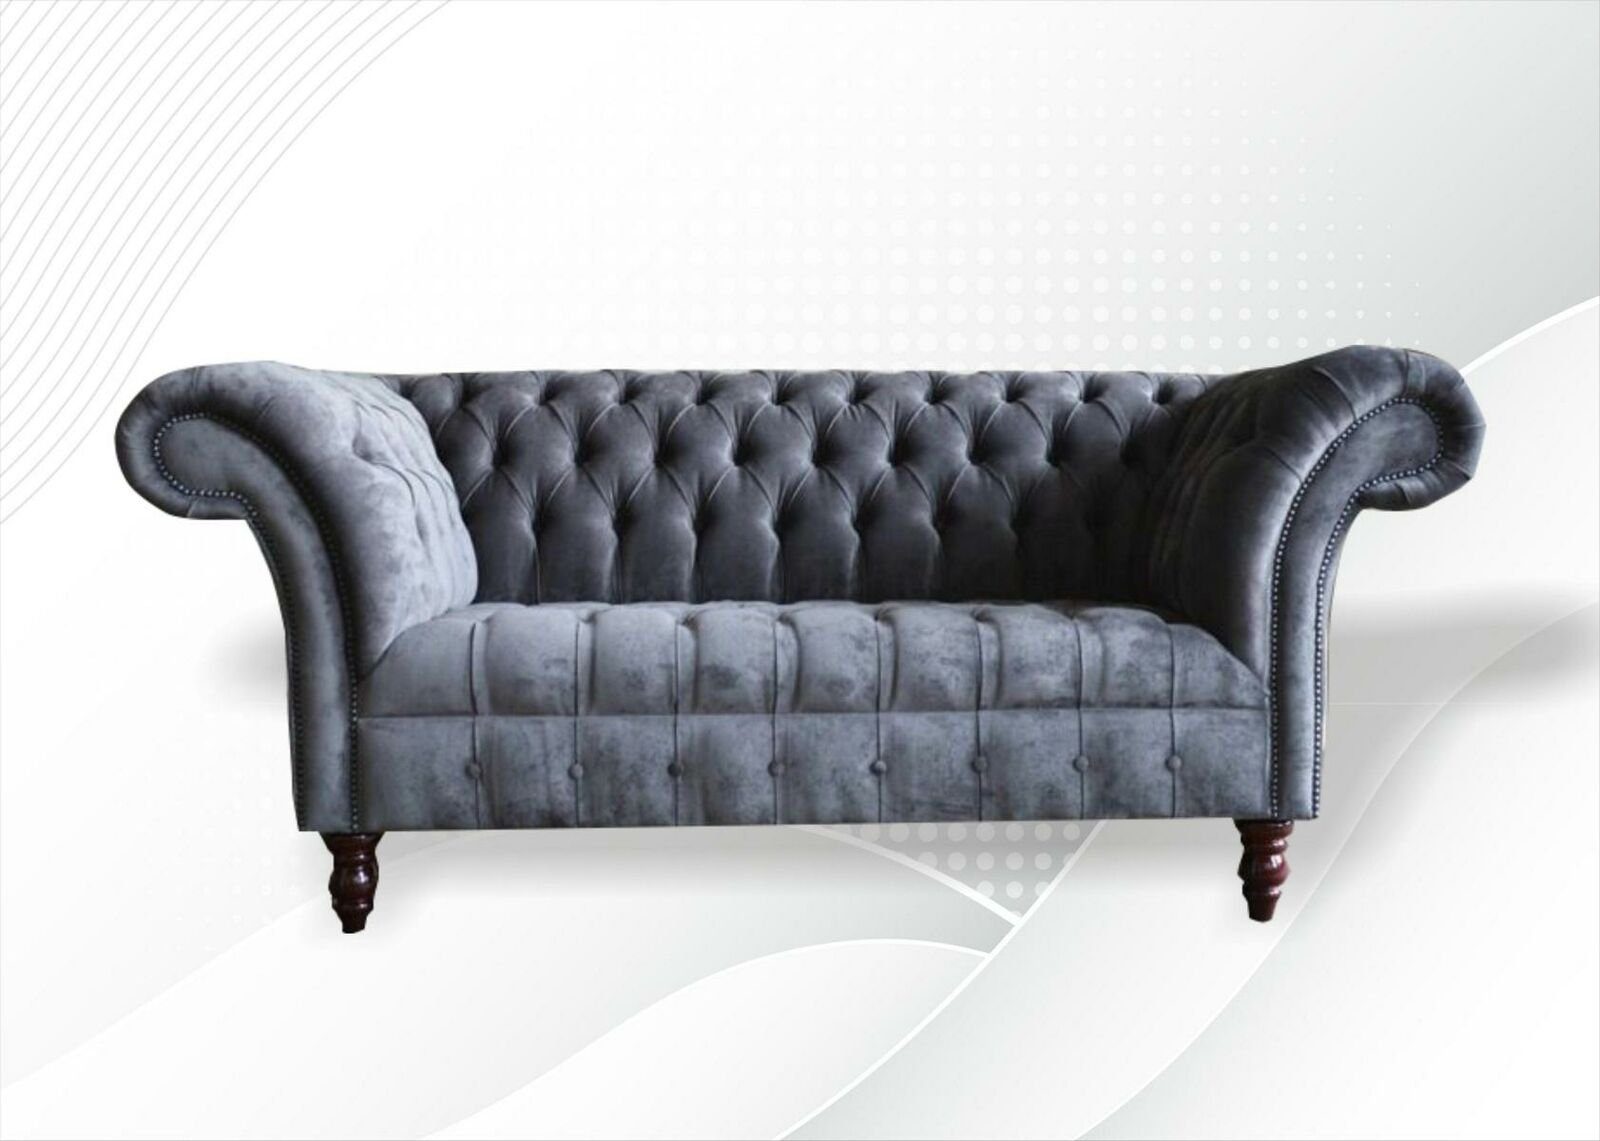 Luxus in Chesterfield-Sofa Chesterfield Made Wohnzimmermöbel Europe grauer Sitzer 2 Neu, JVmoebel